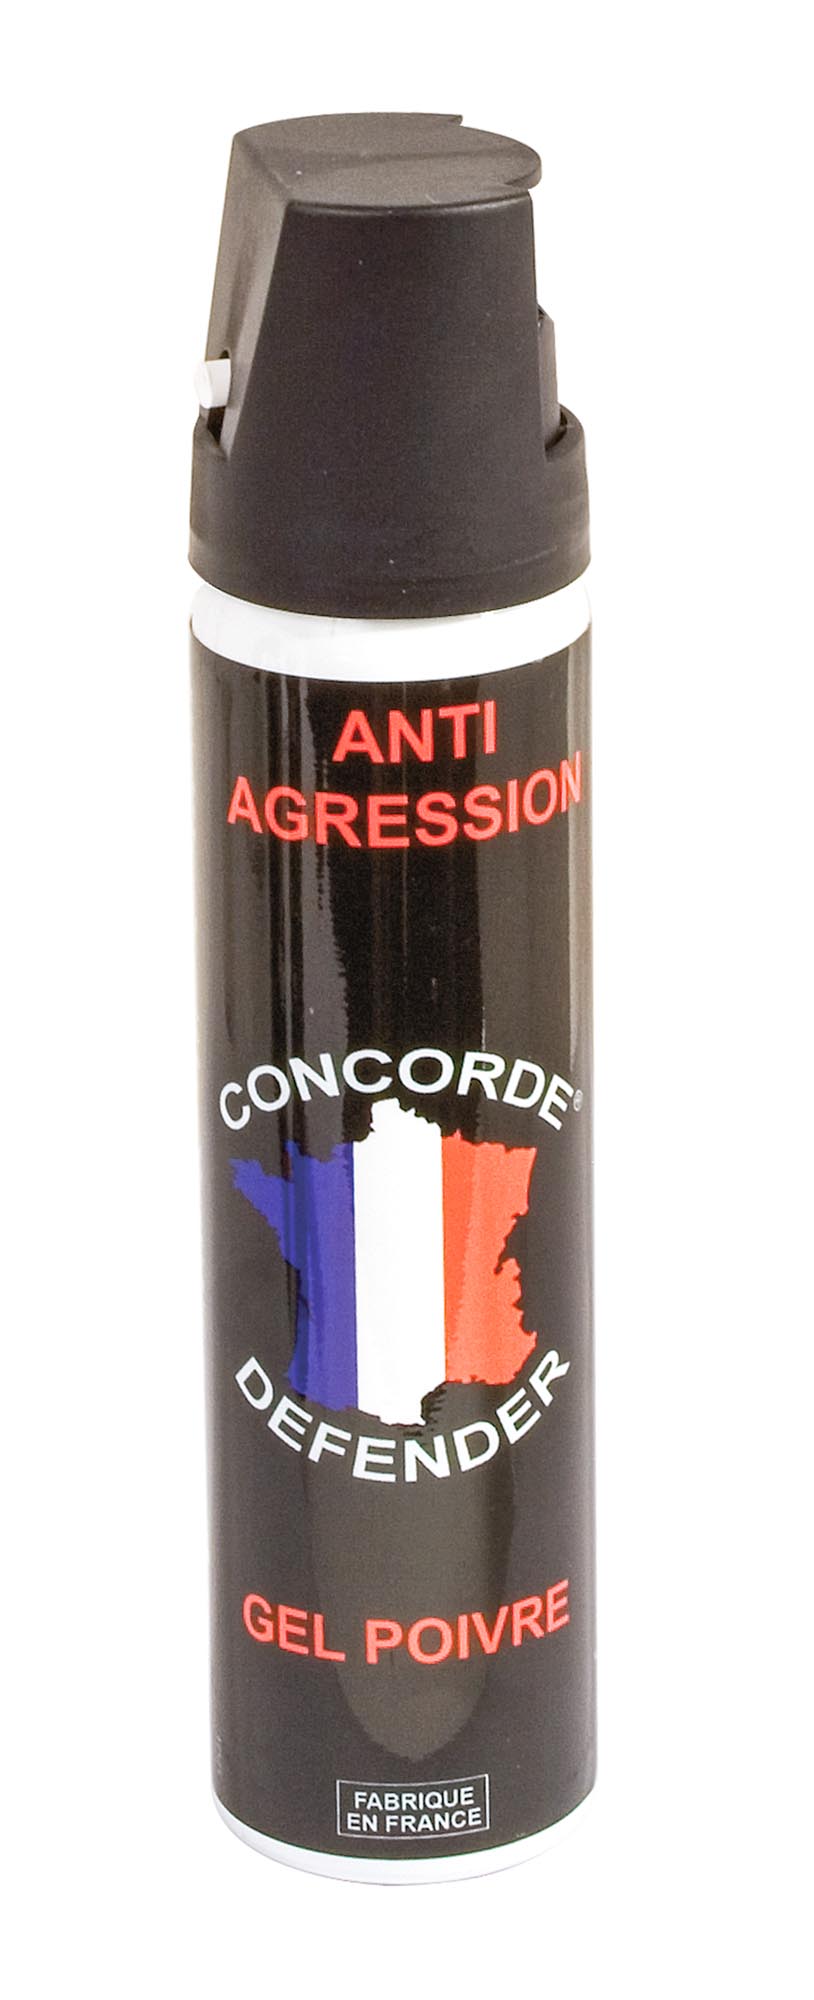 Aérosol Gel Poivré Anti-Agression Avec Poignée - CONCORDE DEFENDER